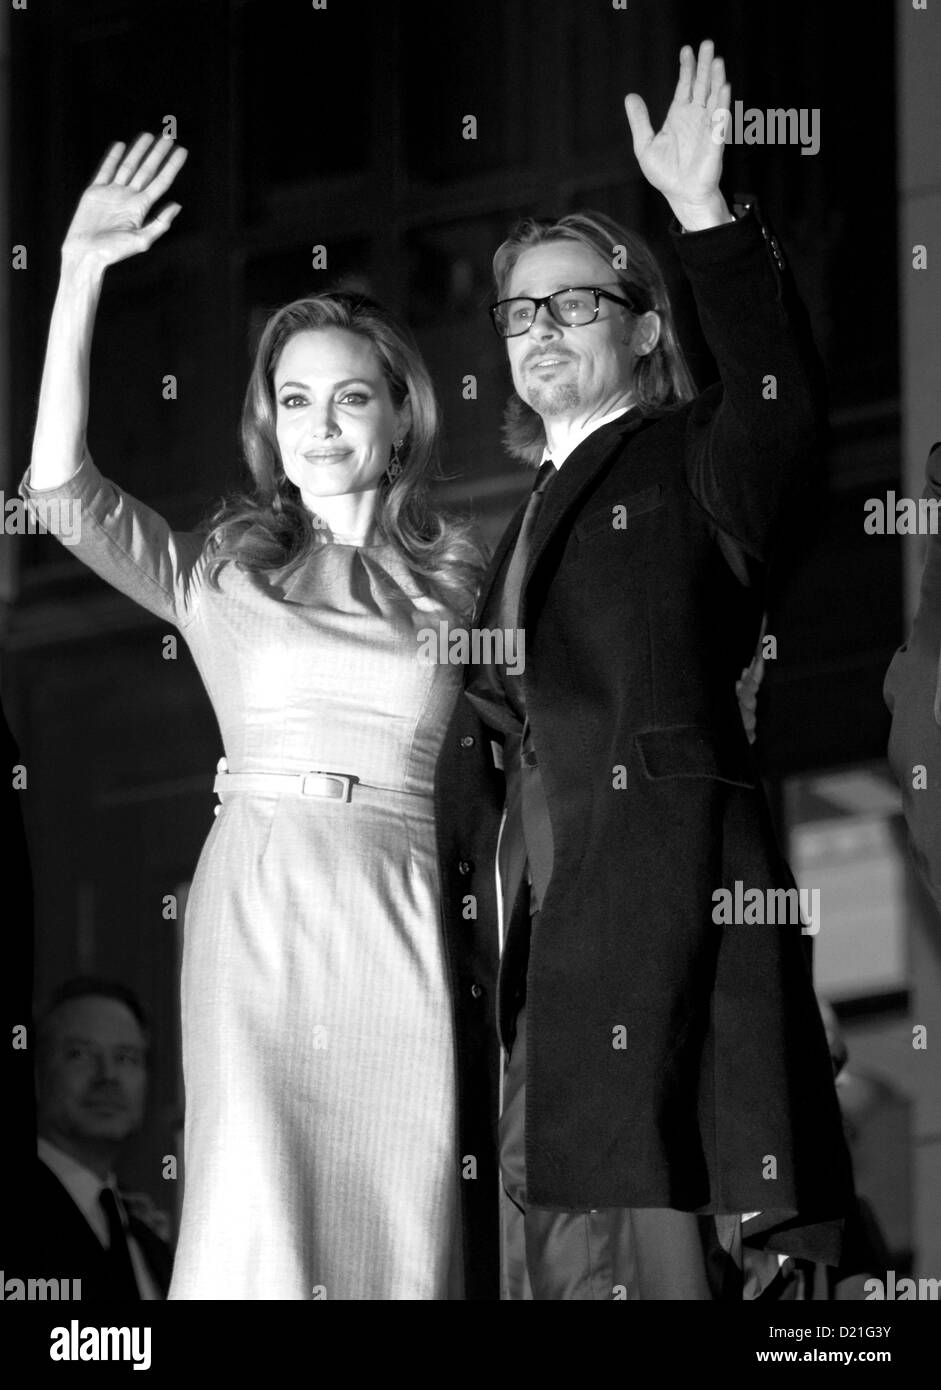 Los EE.UU. Amercian actores Angelina Jolie y Brad Pitt asistir al cine para la Paz Gala en Gendarmenmarkt de Berlín, Alemania, el 13 de febrero de 2012. La gala es parte del Festival Internacional de Cine de Berlín, la Berlinale. Foto: Herbert Knosowski (sólo blanco y negro) Foto de stock